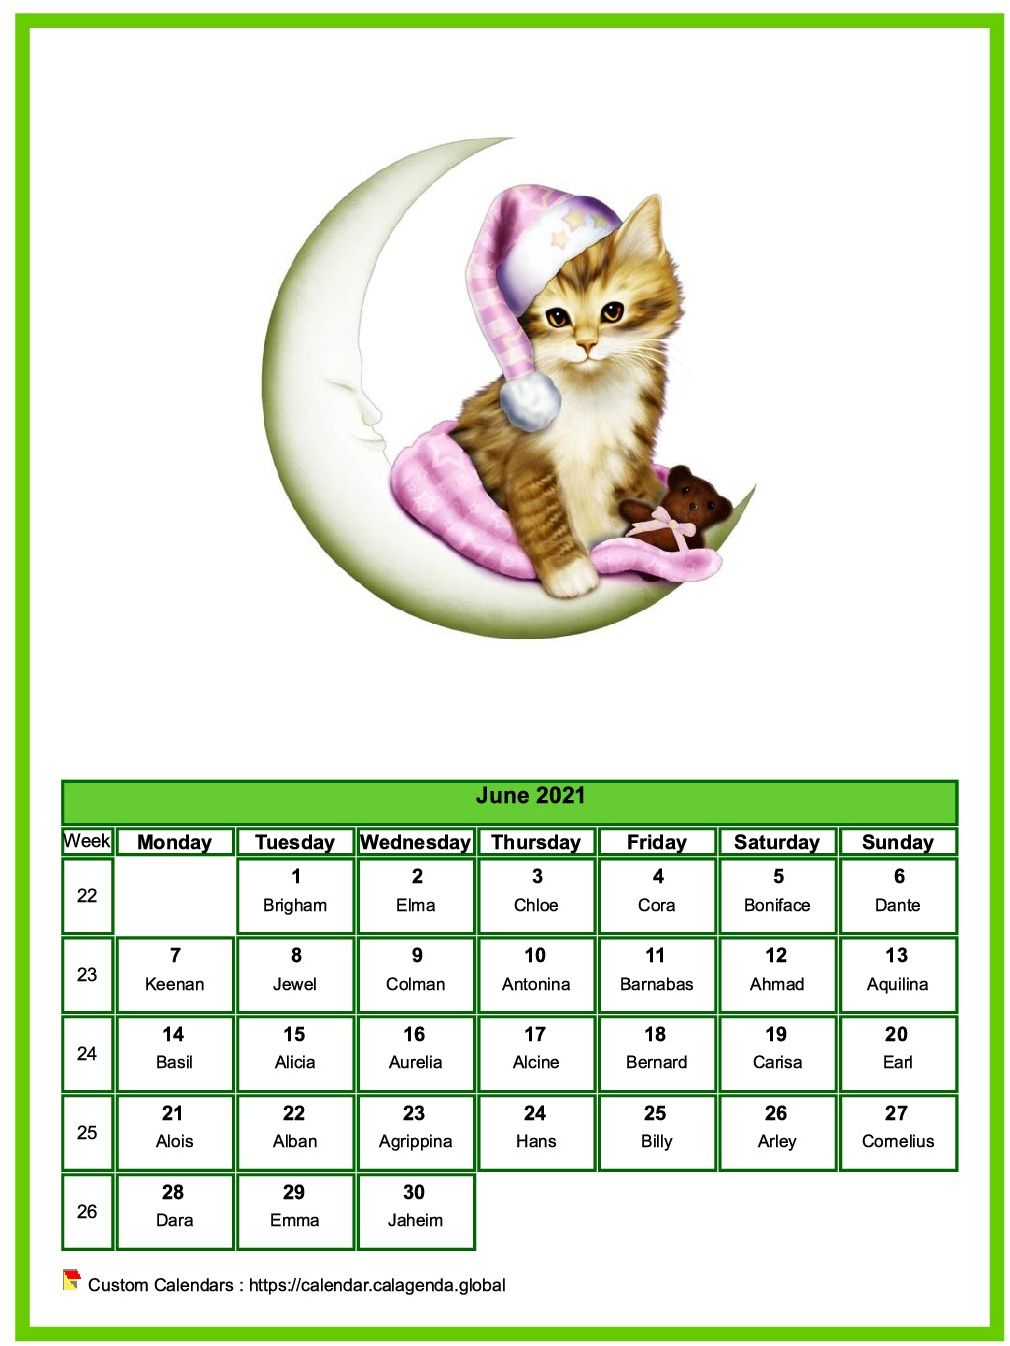 Calendar June 2021 cats